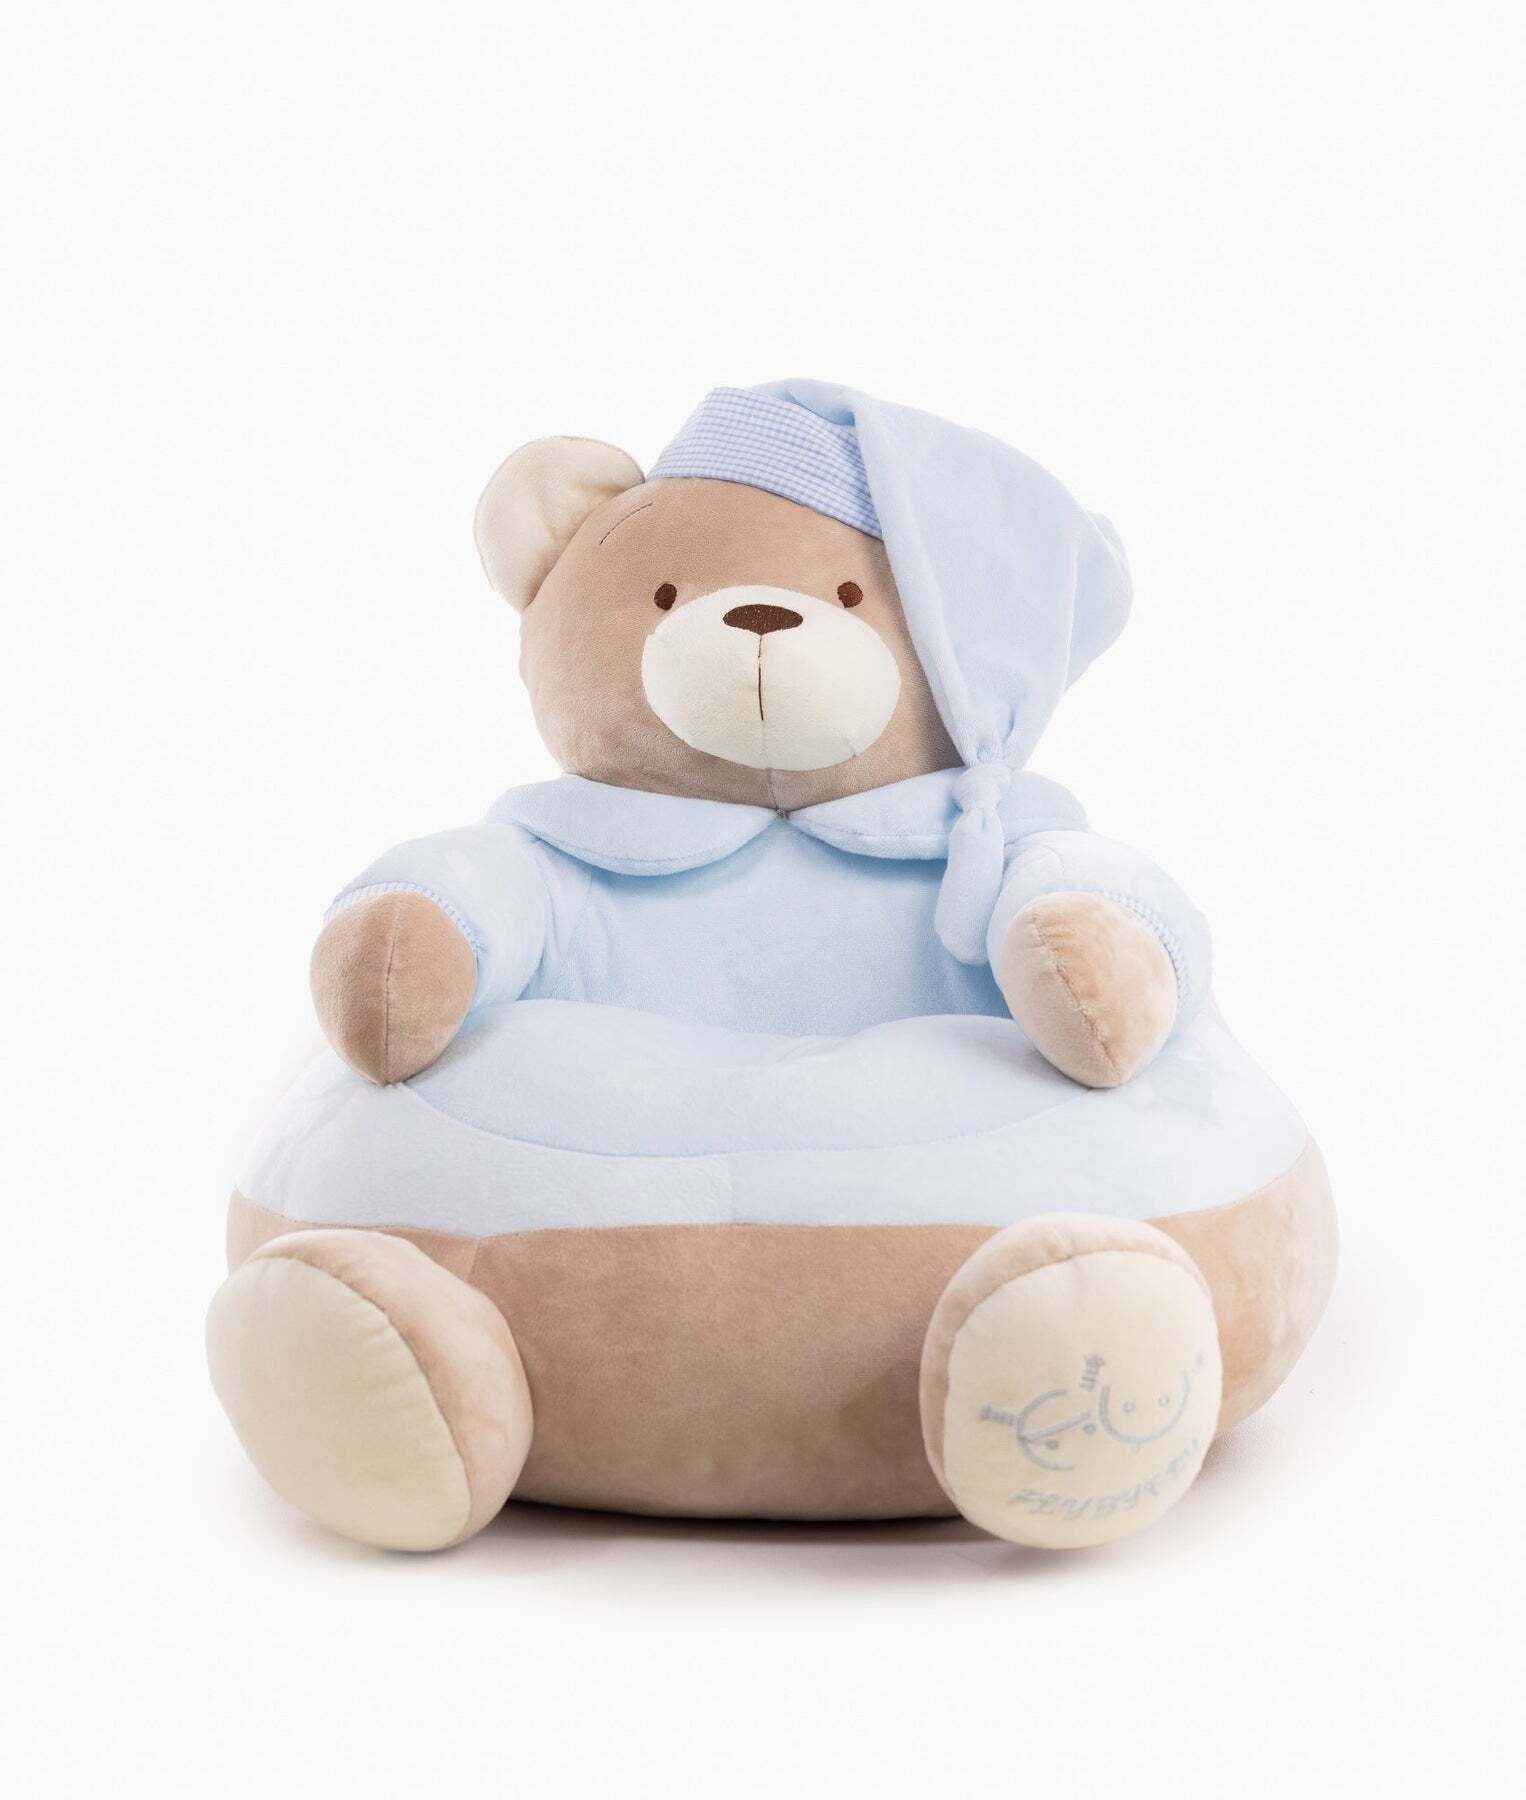 baby-bear-armchair-blue-826_1800x1800